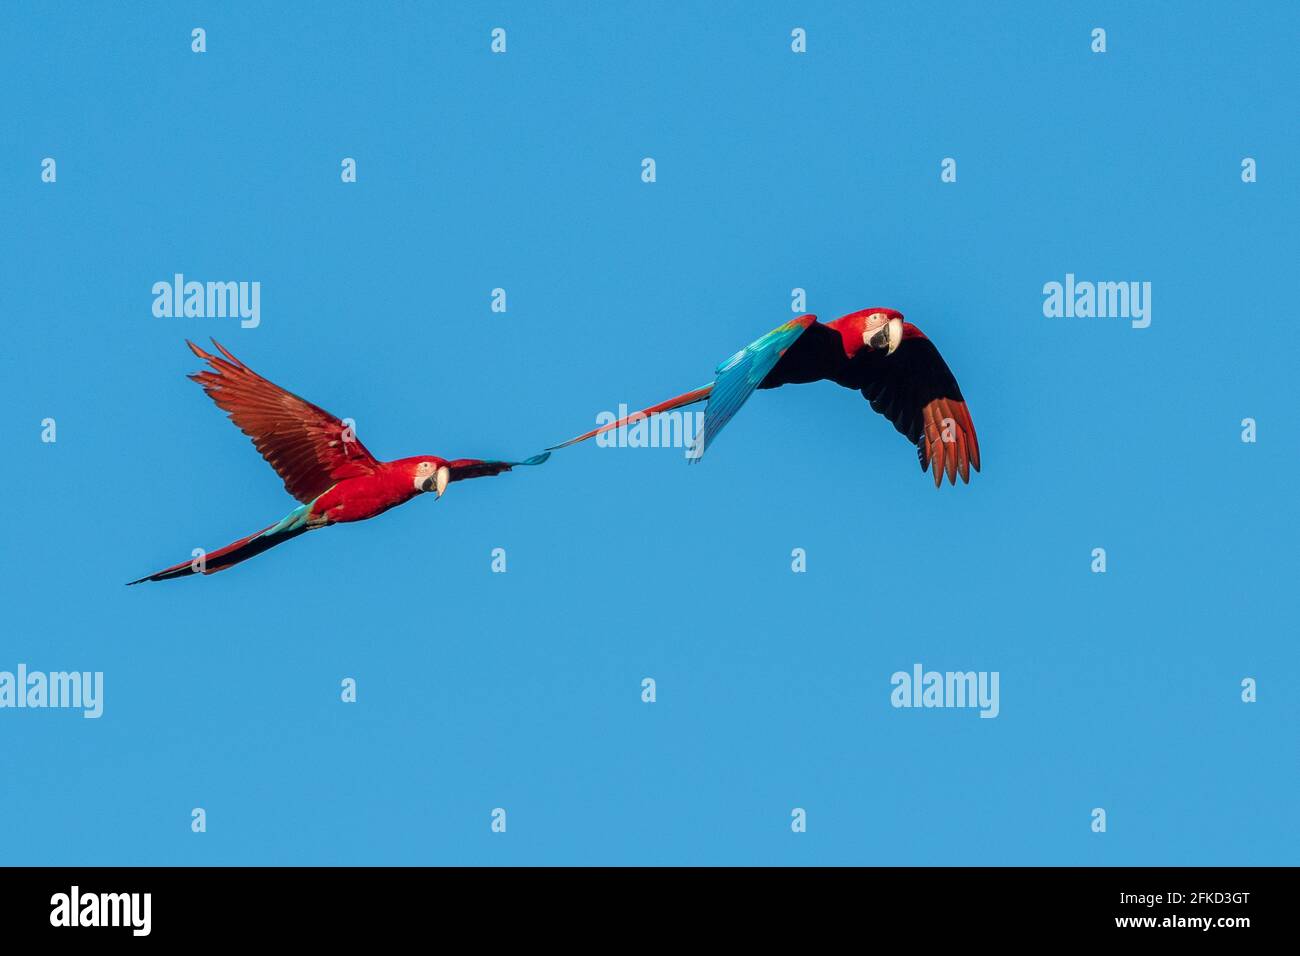 Brazil, Mato Grosso Do Sul, Jardim, Scarlet macaws flying Stock Photo